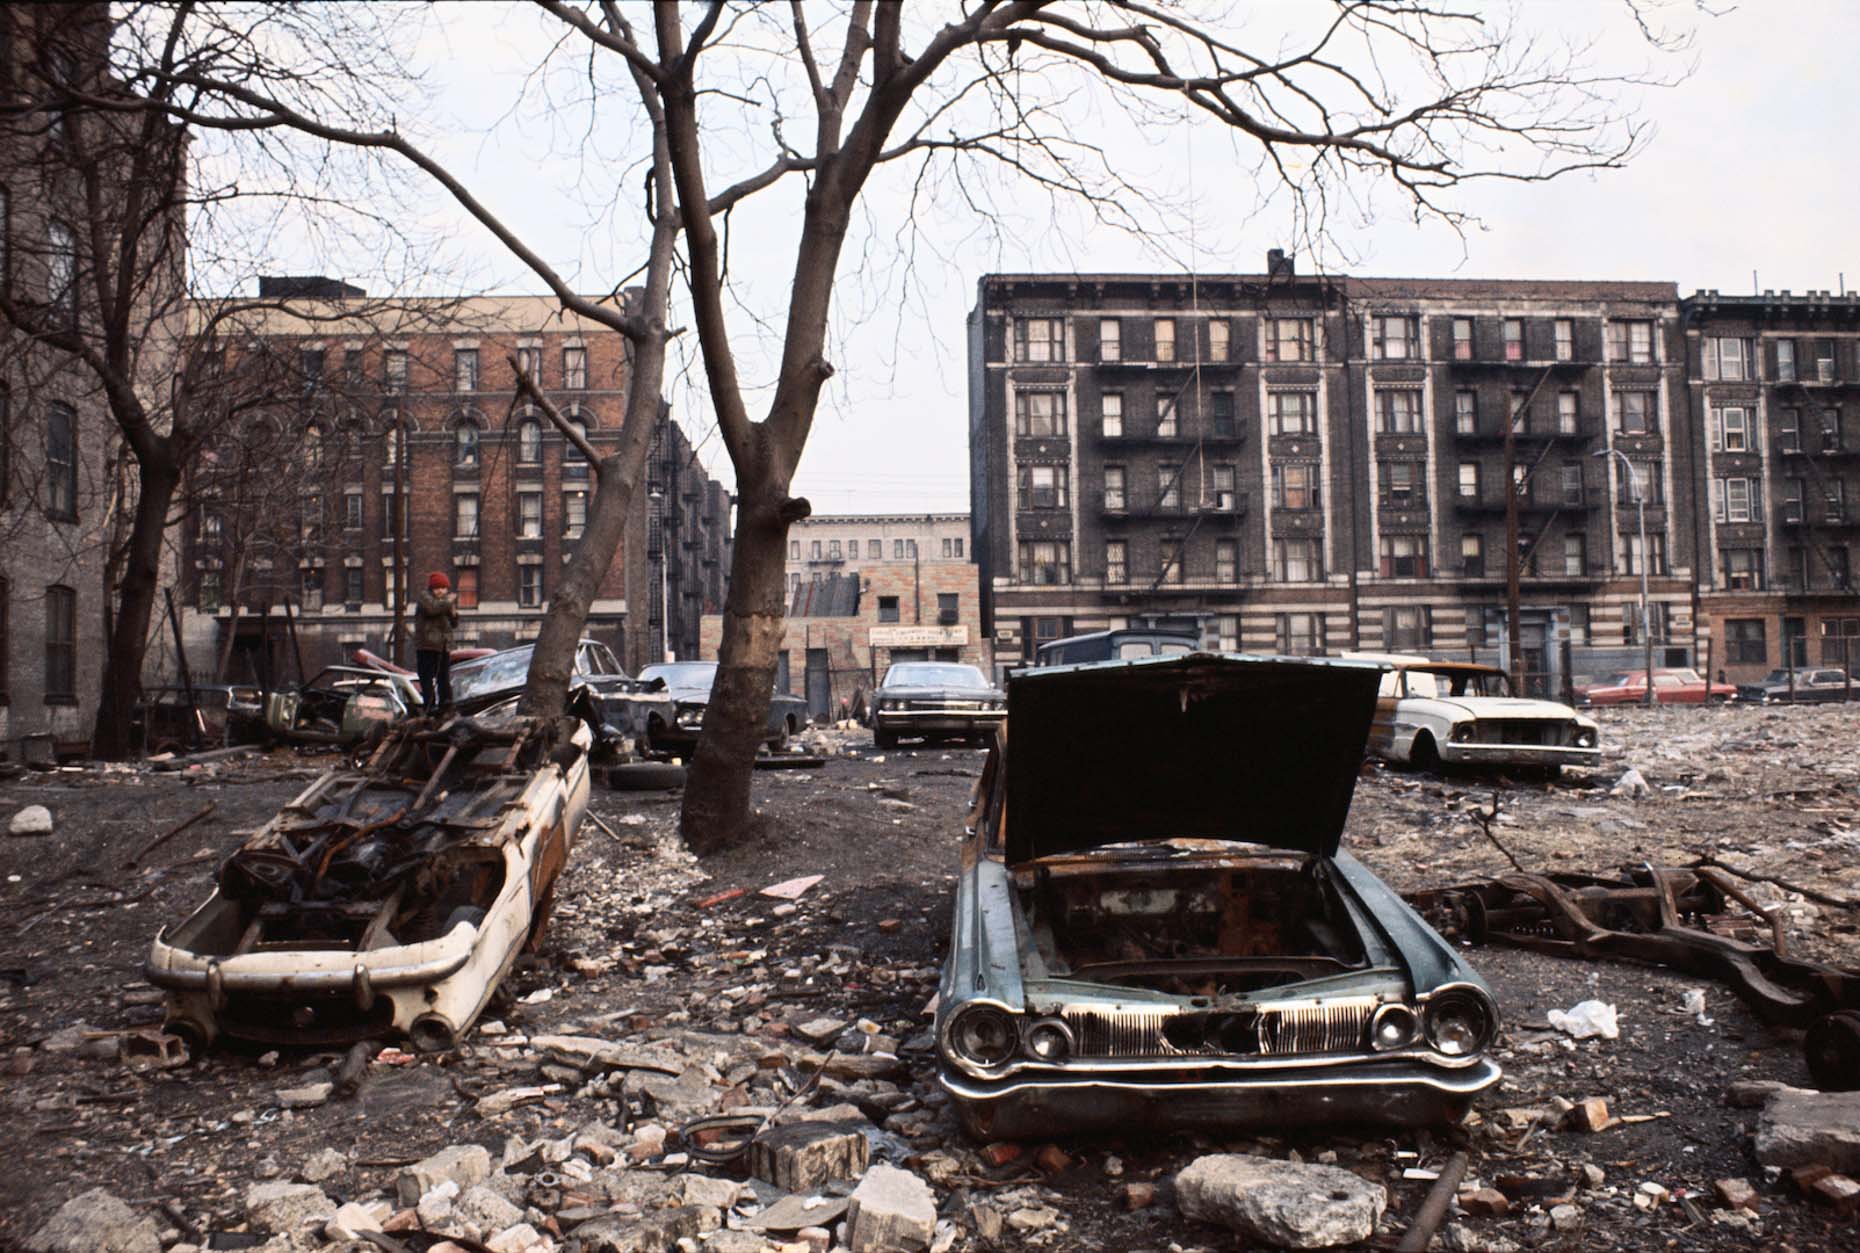 После унылого двора в котором нет. Южный Бронкс Нью-Йорк. Нью-Йорк Бронкс улицы. Южный Бронкс трущобы. Нью Йорк Бронкс 1970.